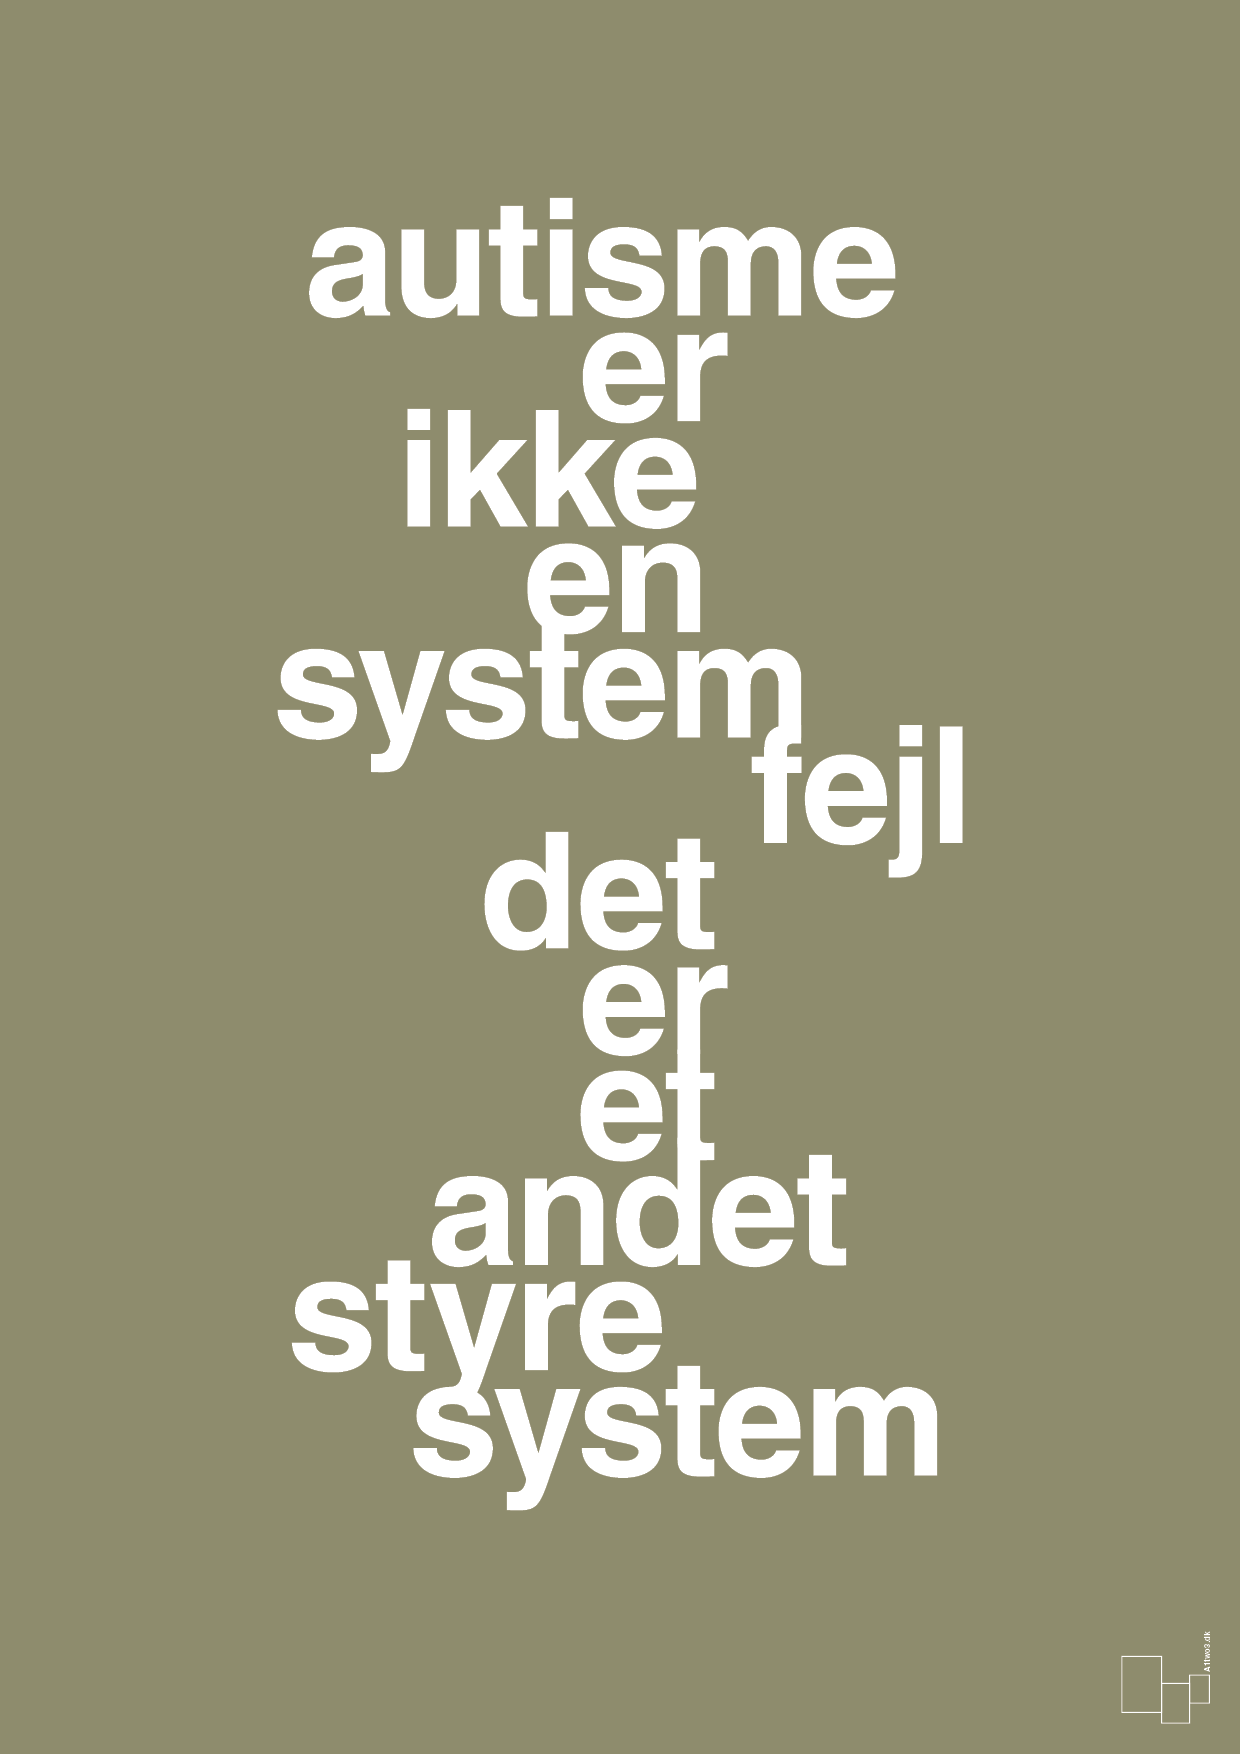 autisme er ikke en systemfejl - Plakat med Samfund i Misty Forrest